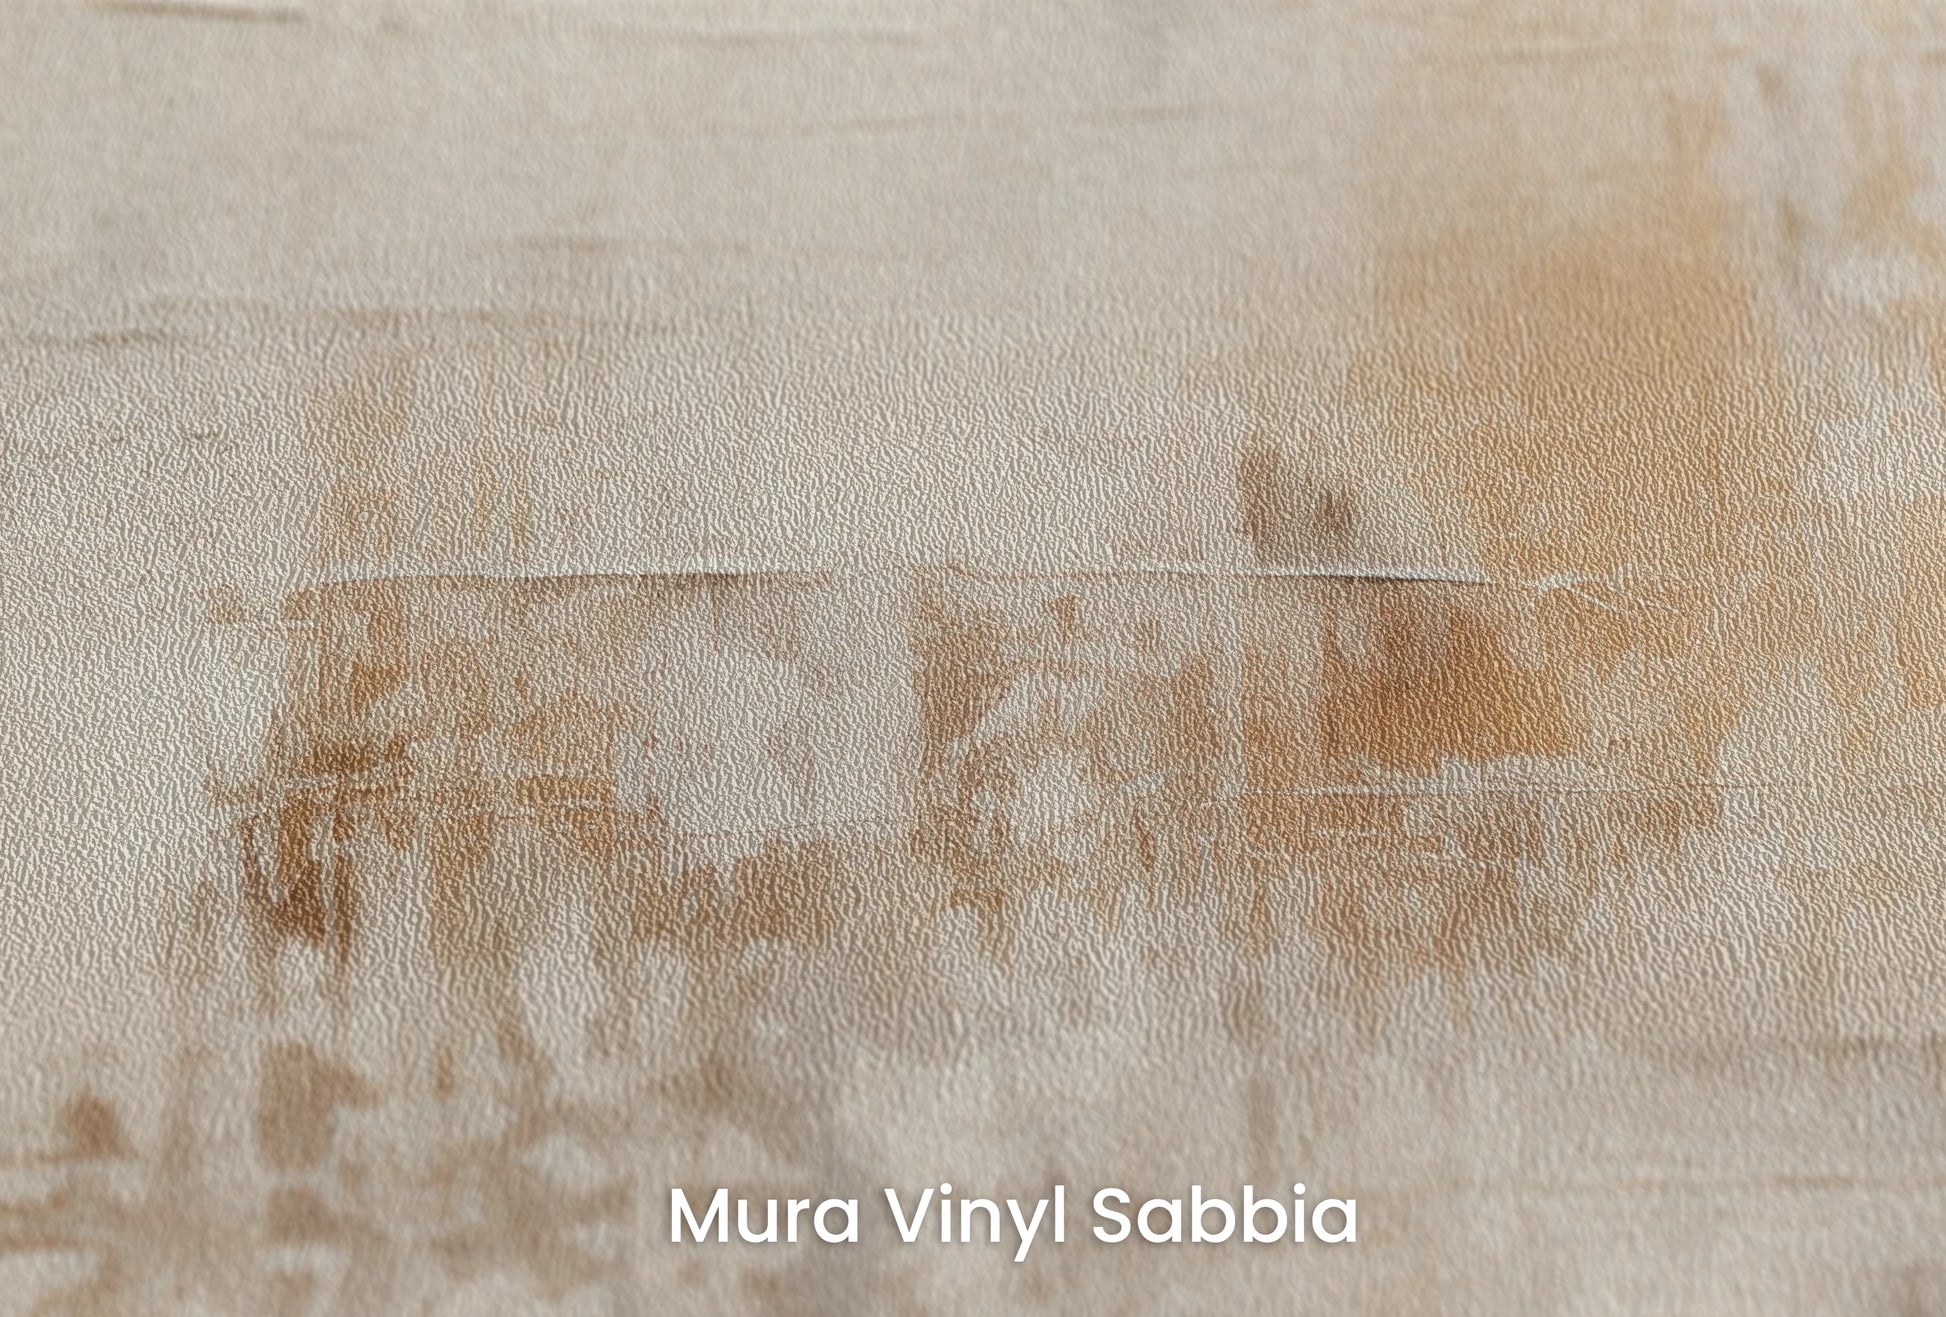 Zbliżenie na artystyczną fototapetę o nazwie Abstract Serenity na podłożu Mura Vinyl Sabbia struktura grubego ziarna piasku.